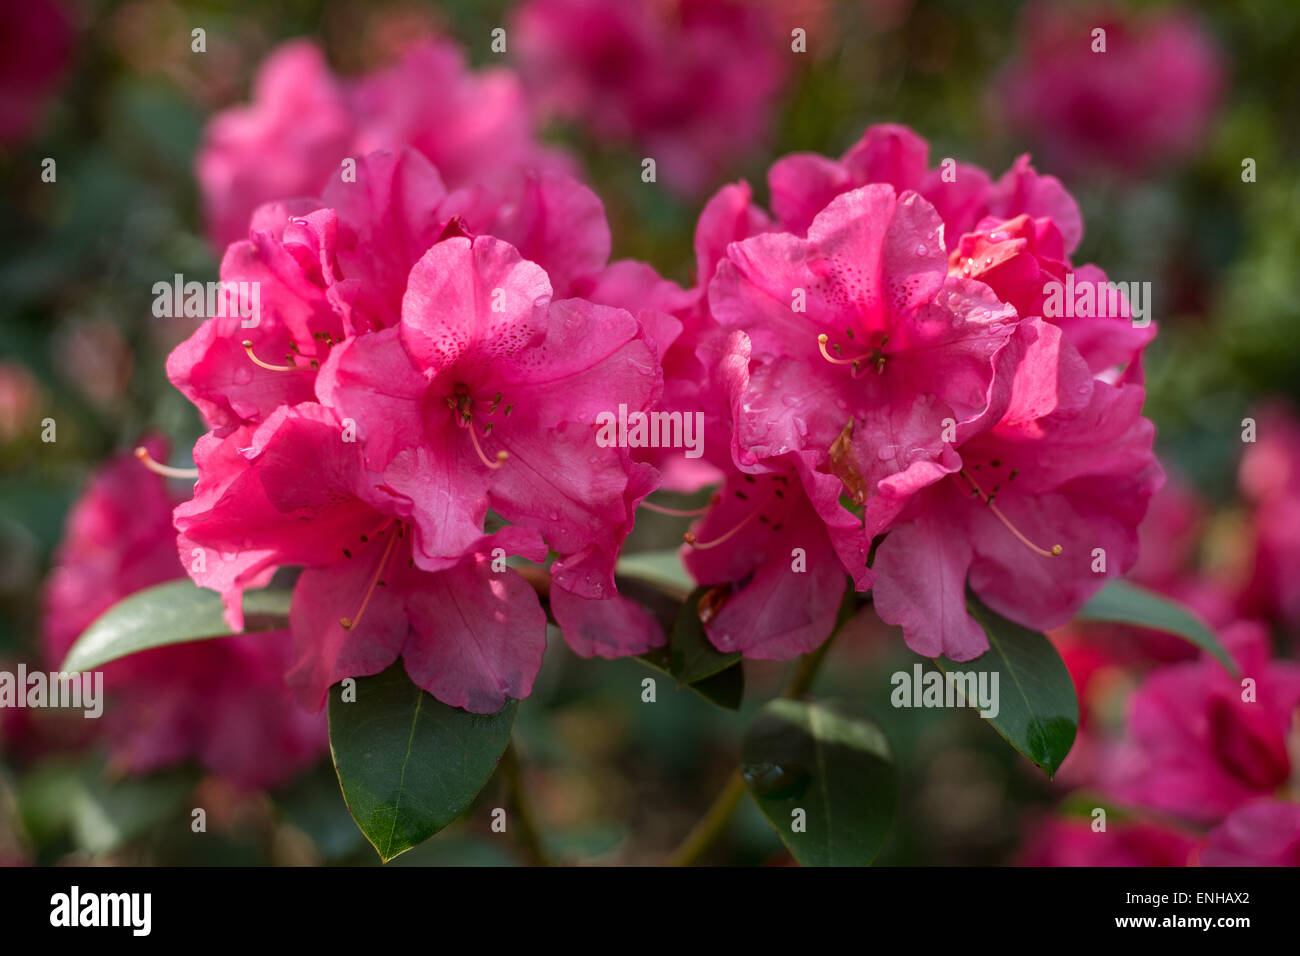 Red Rhododendron aprile fiori di incandescenza close up Foto Stock